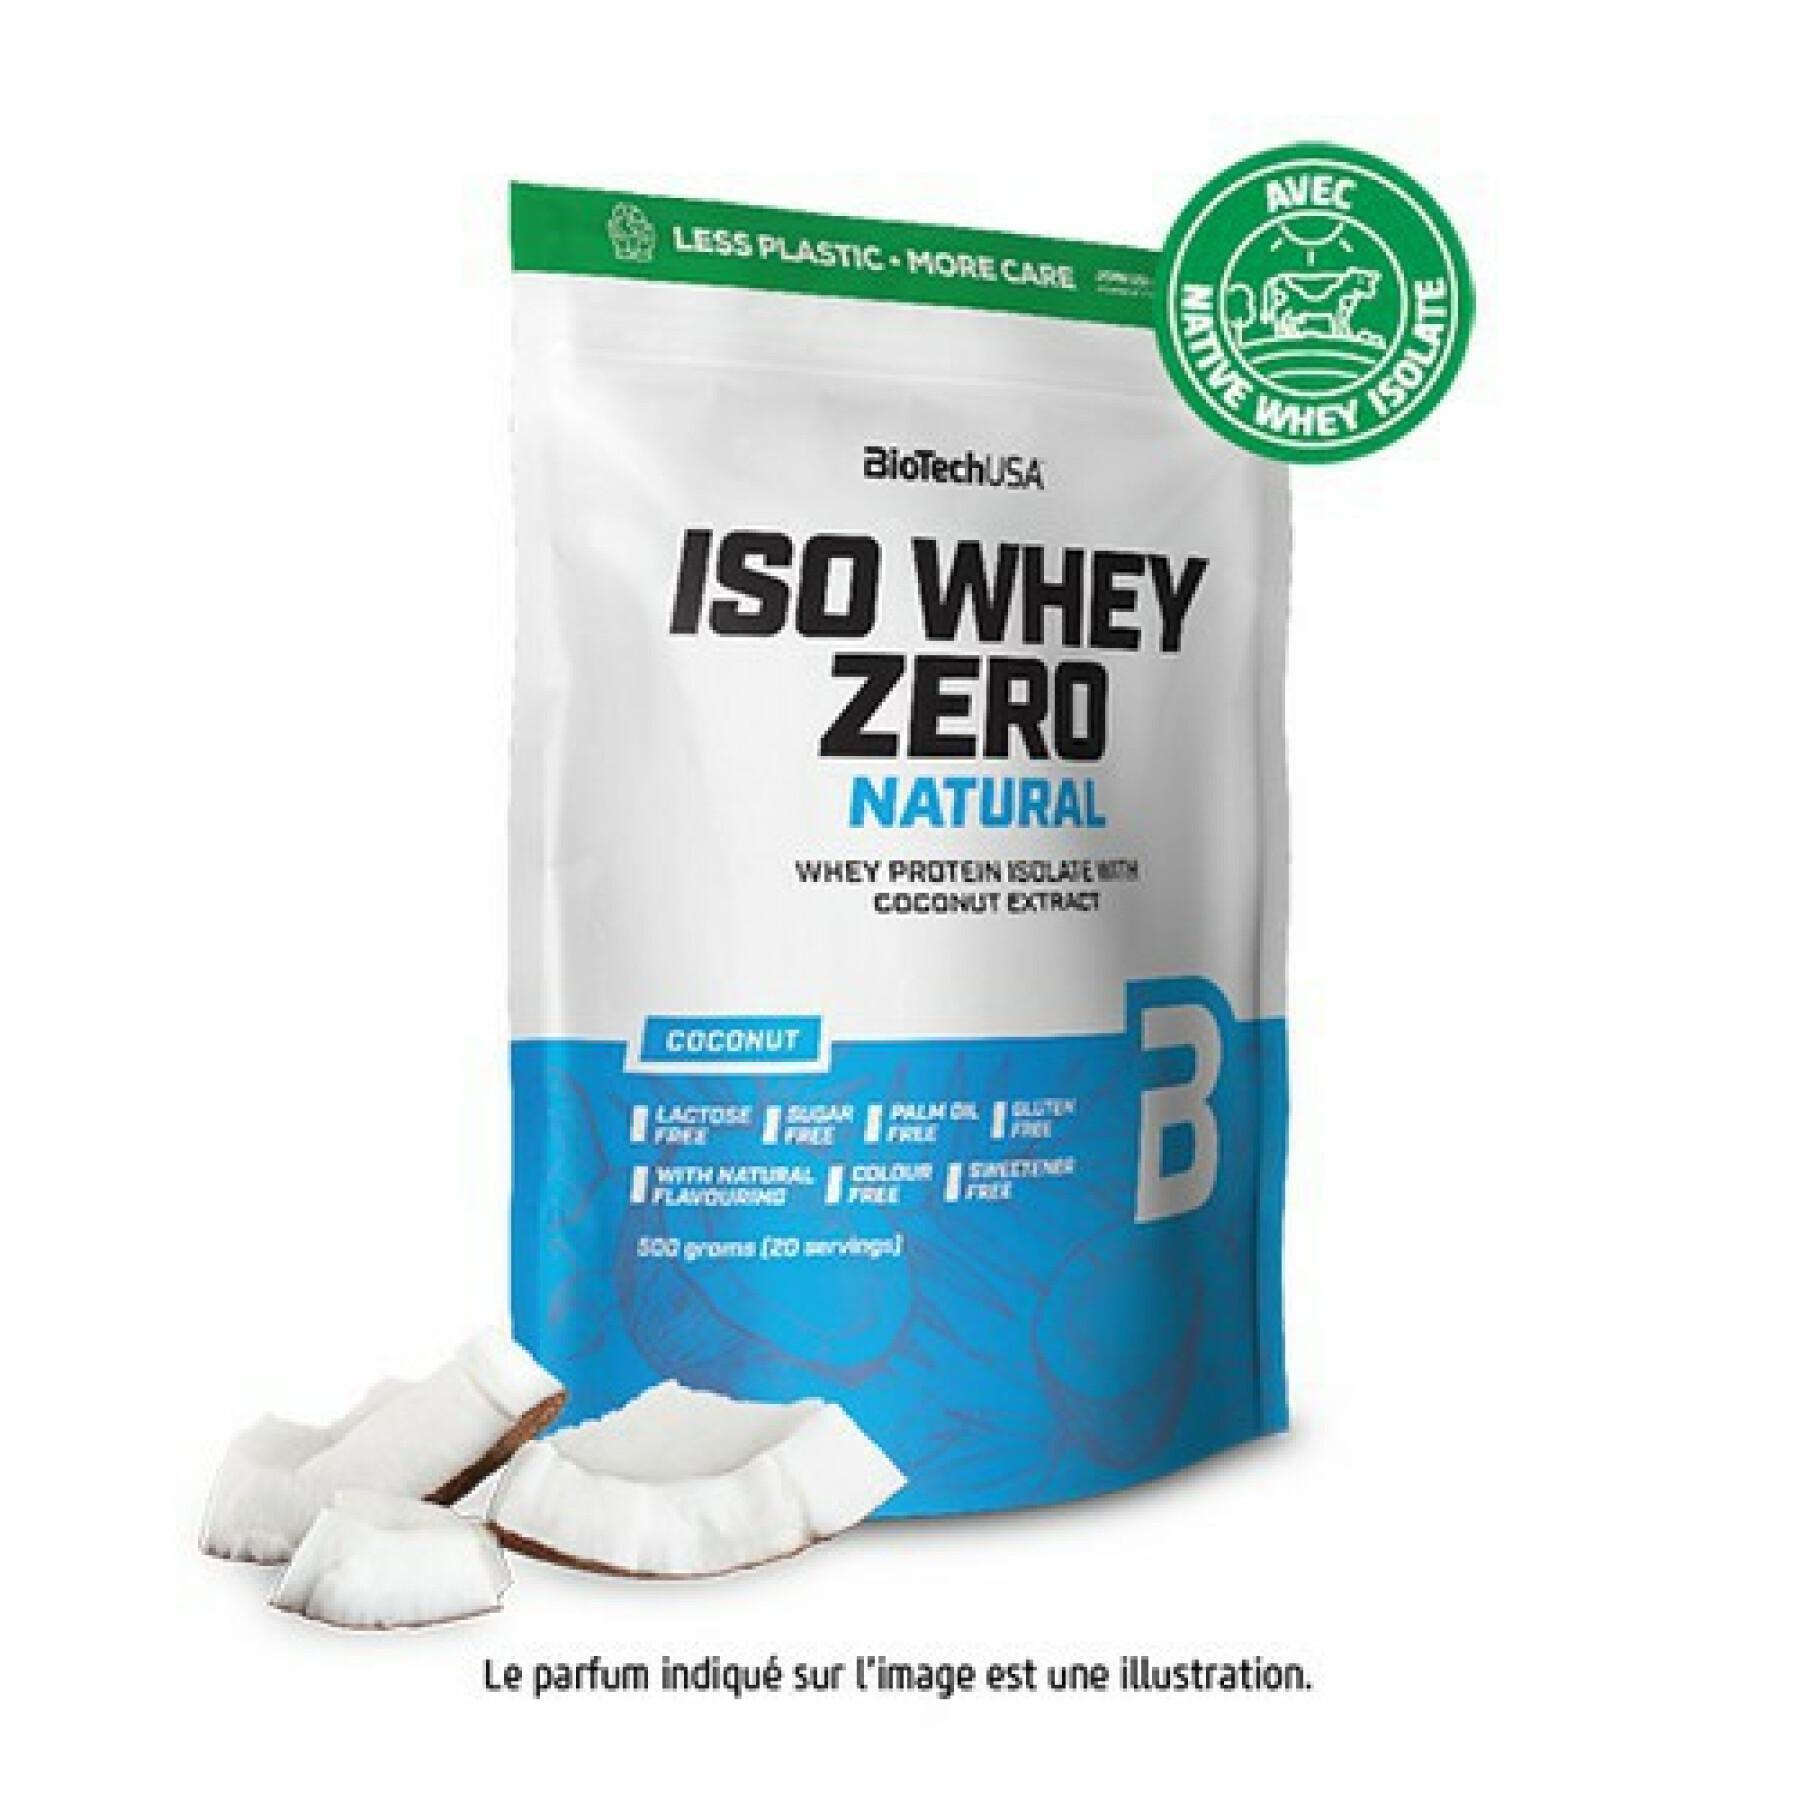 10er Pack Proteinbeutel Biotech USA iso whey zero Laktosefrei - Coco - 500g